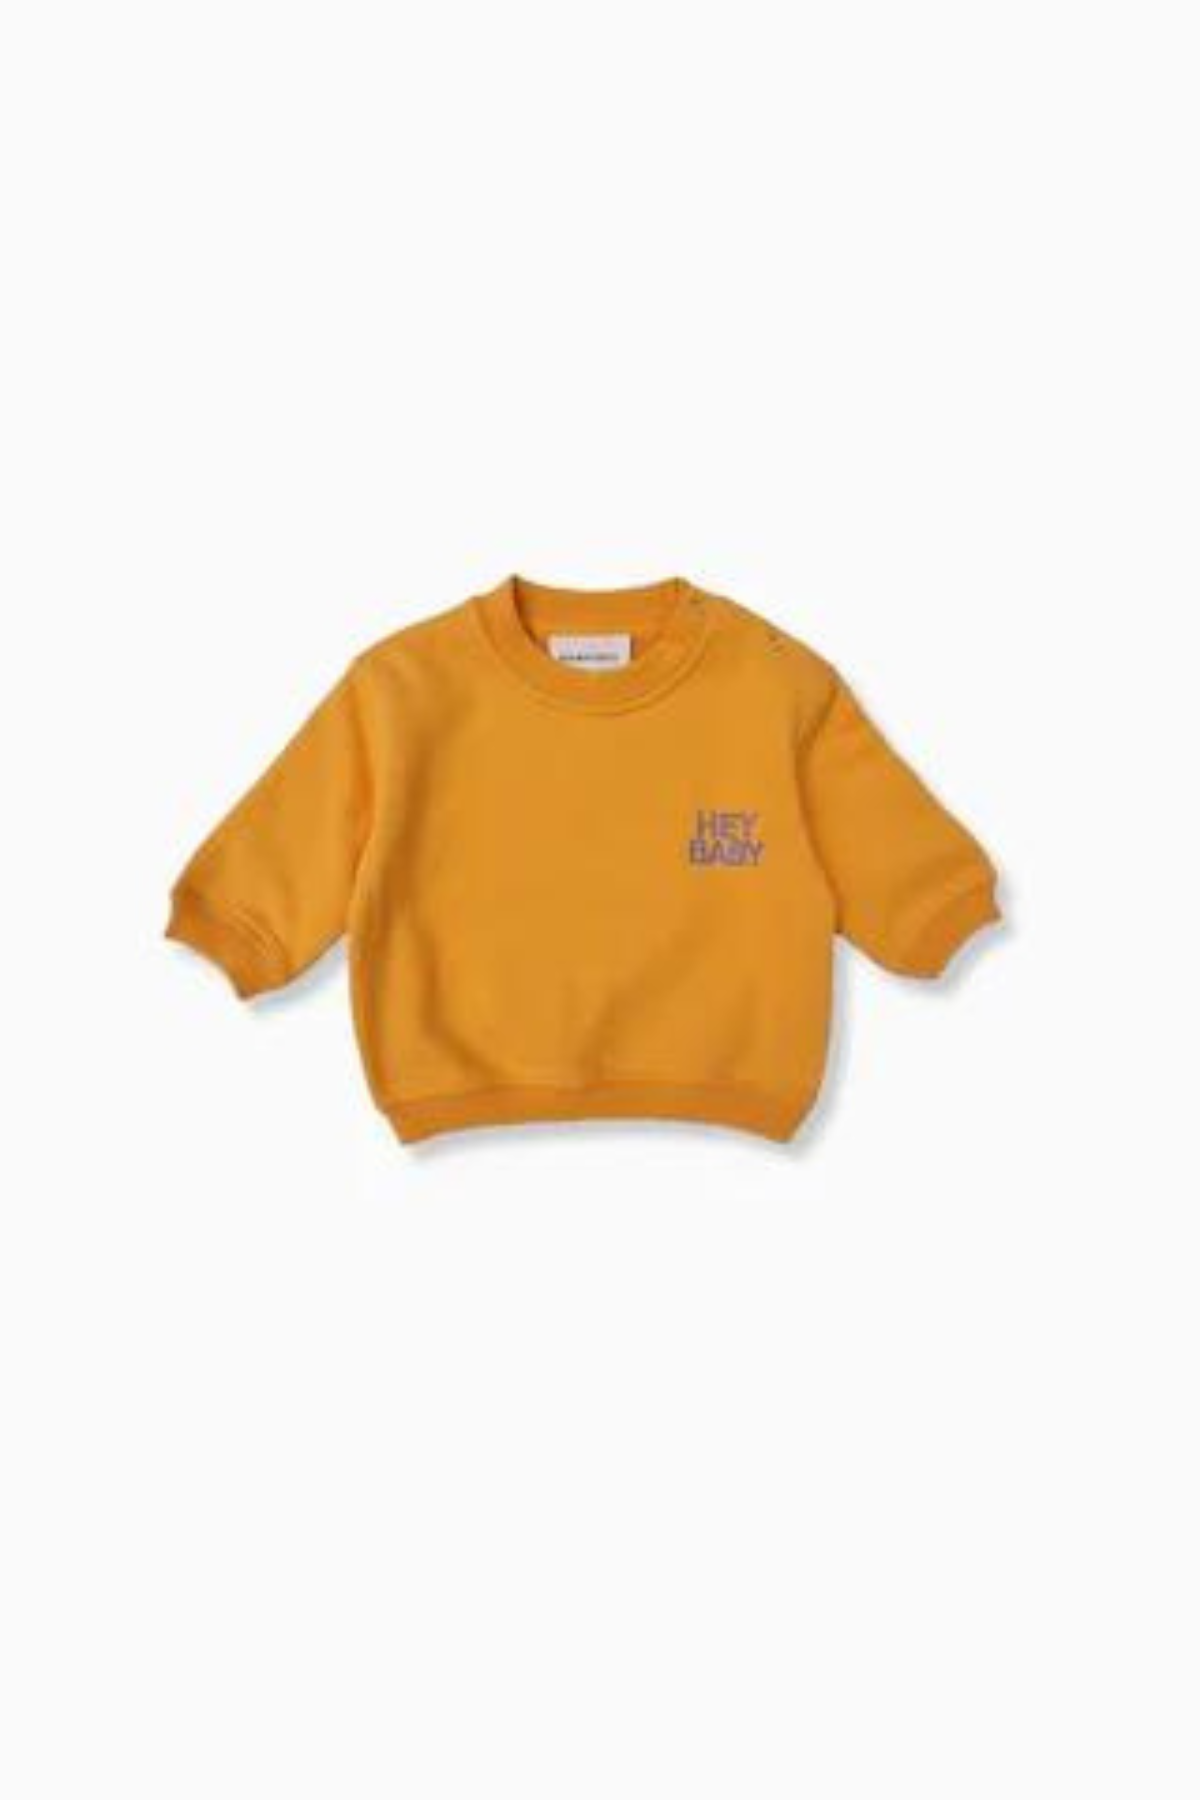 Mini-Sweatshirt "HEY BABY" | verschiedene Farben